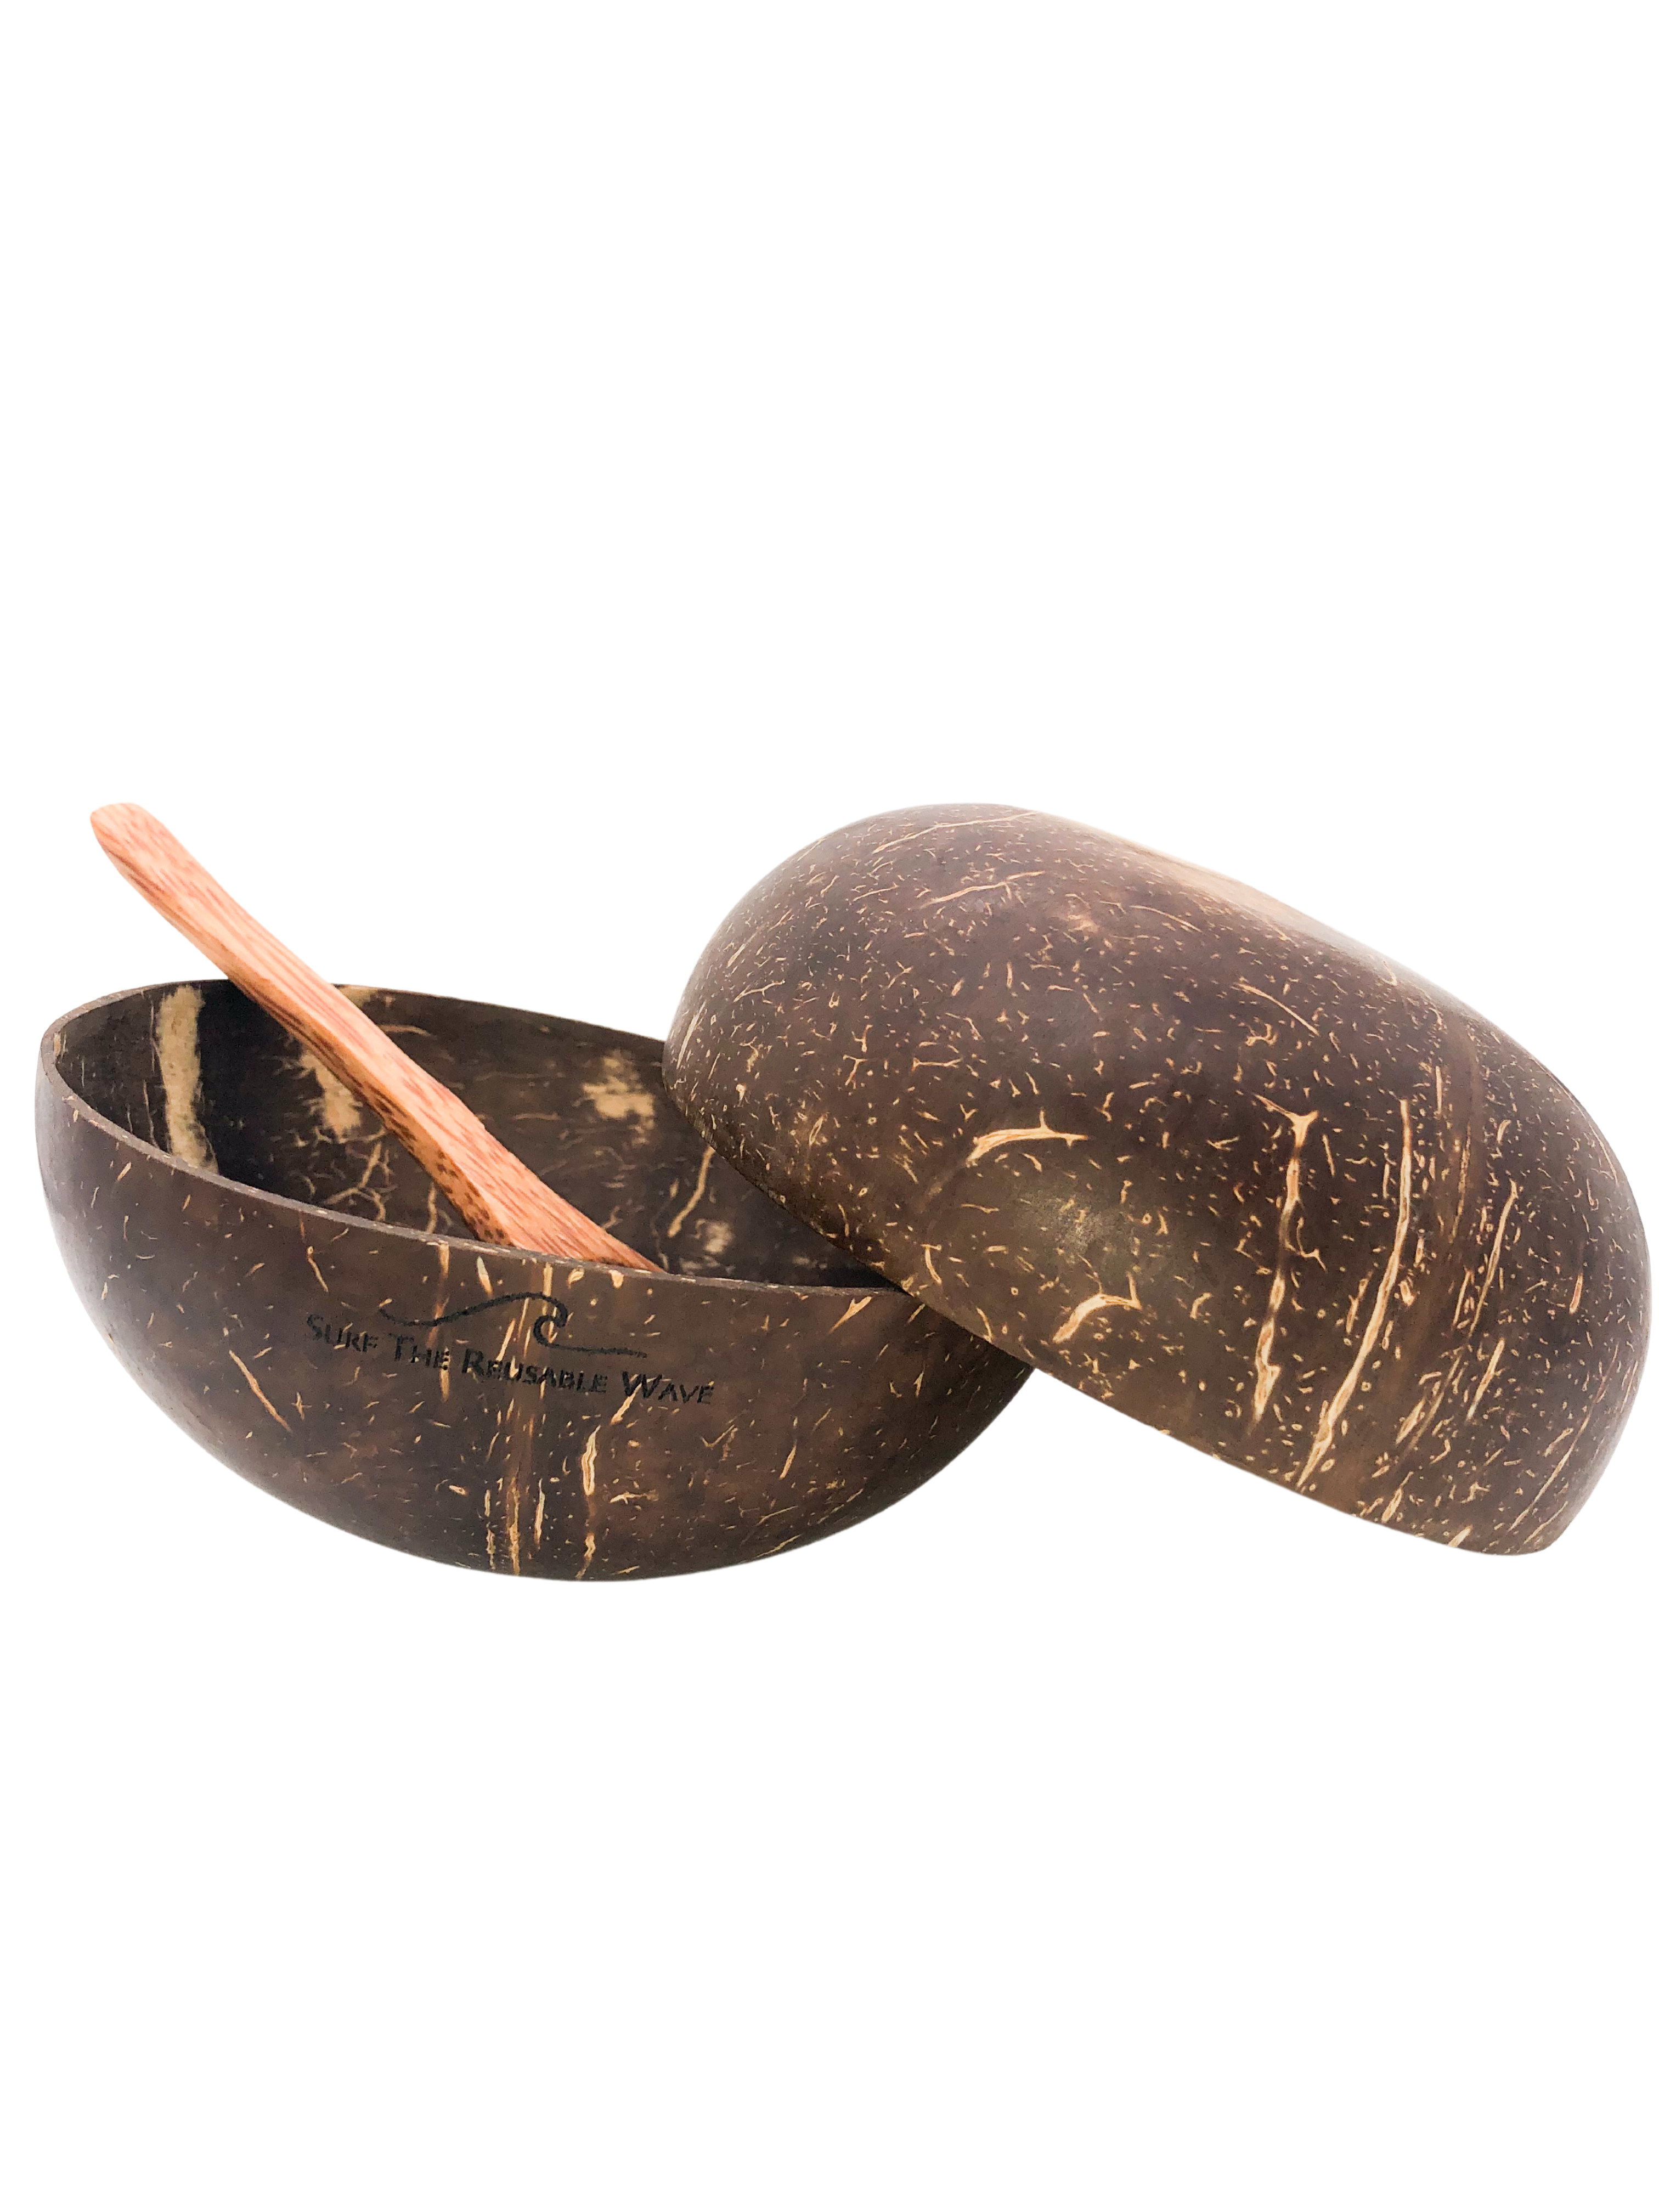 Coconut Bowl Set Bundles - STRW Co.